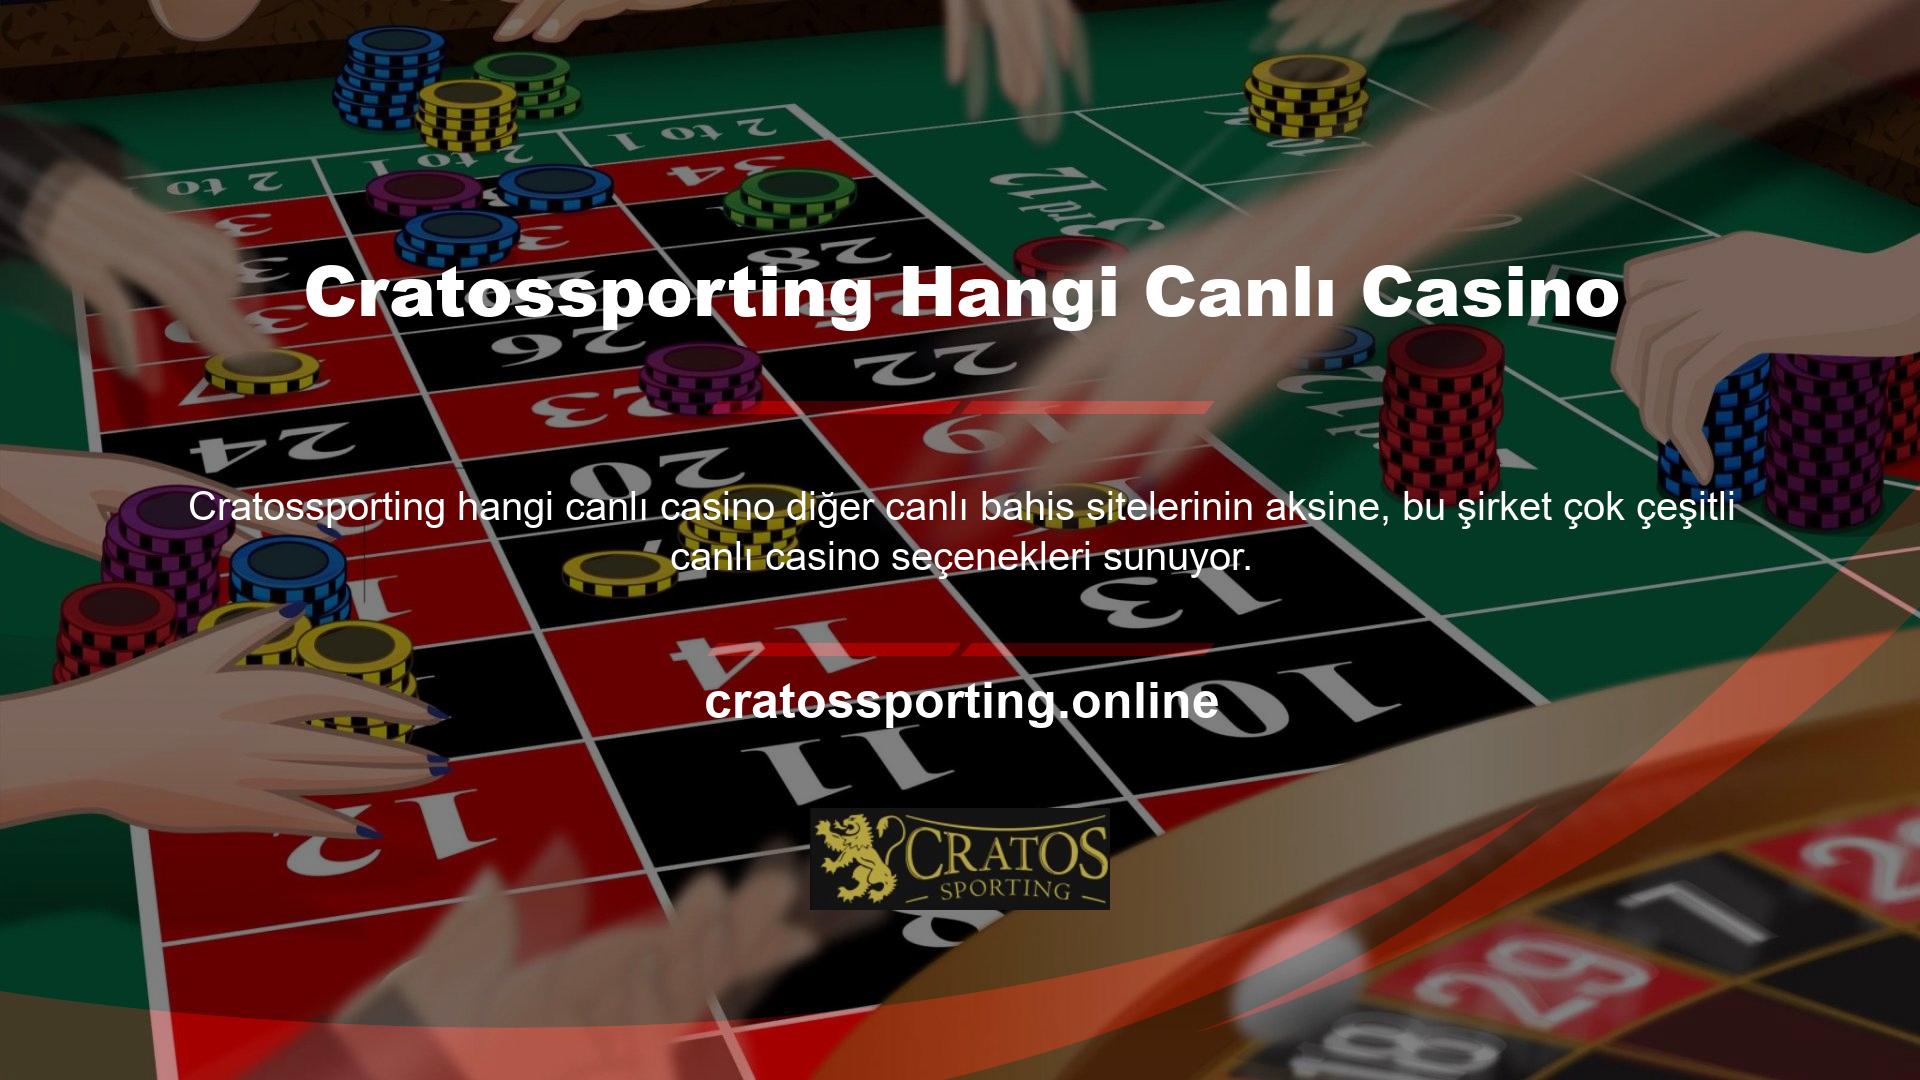 Canlı casino alternatifleri, oyun sağlayıcısına bağlı olarak farklı lobilerde oynanabilmektedir